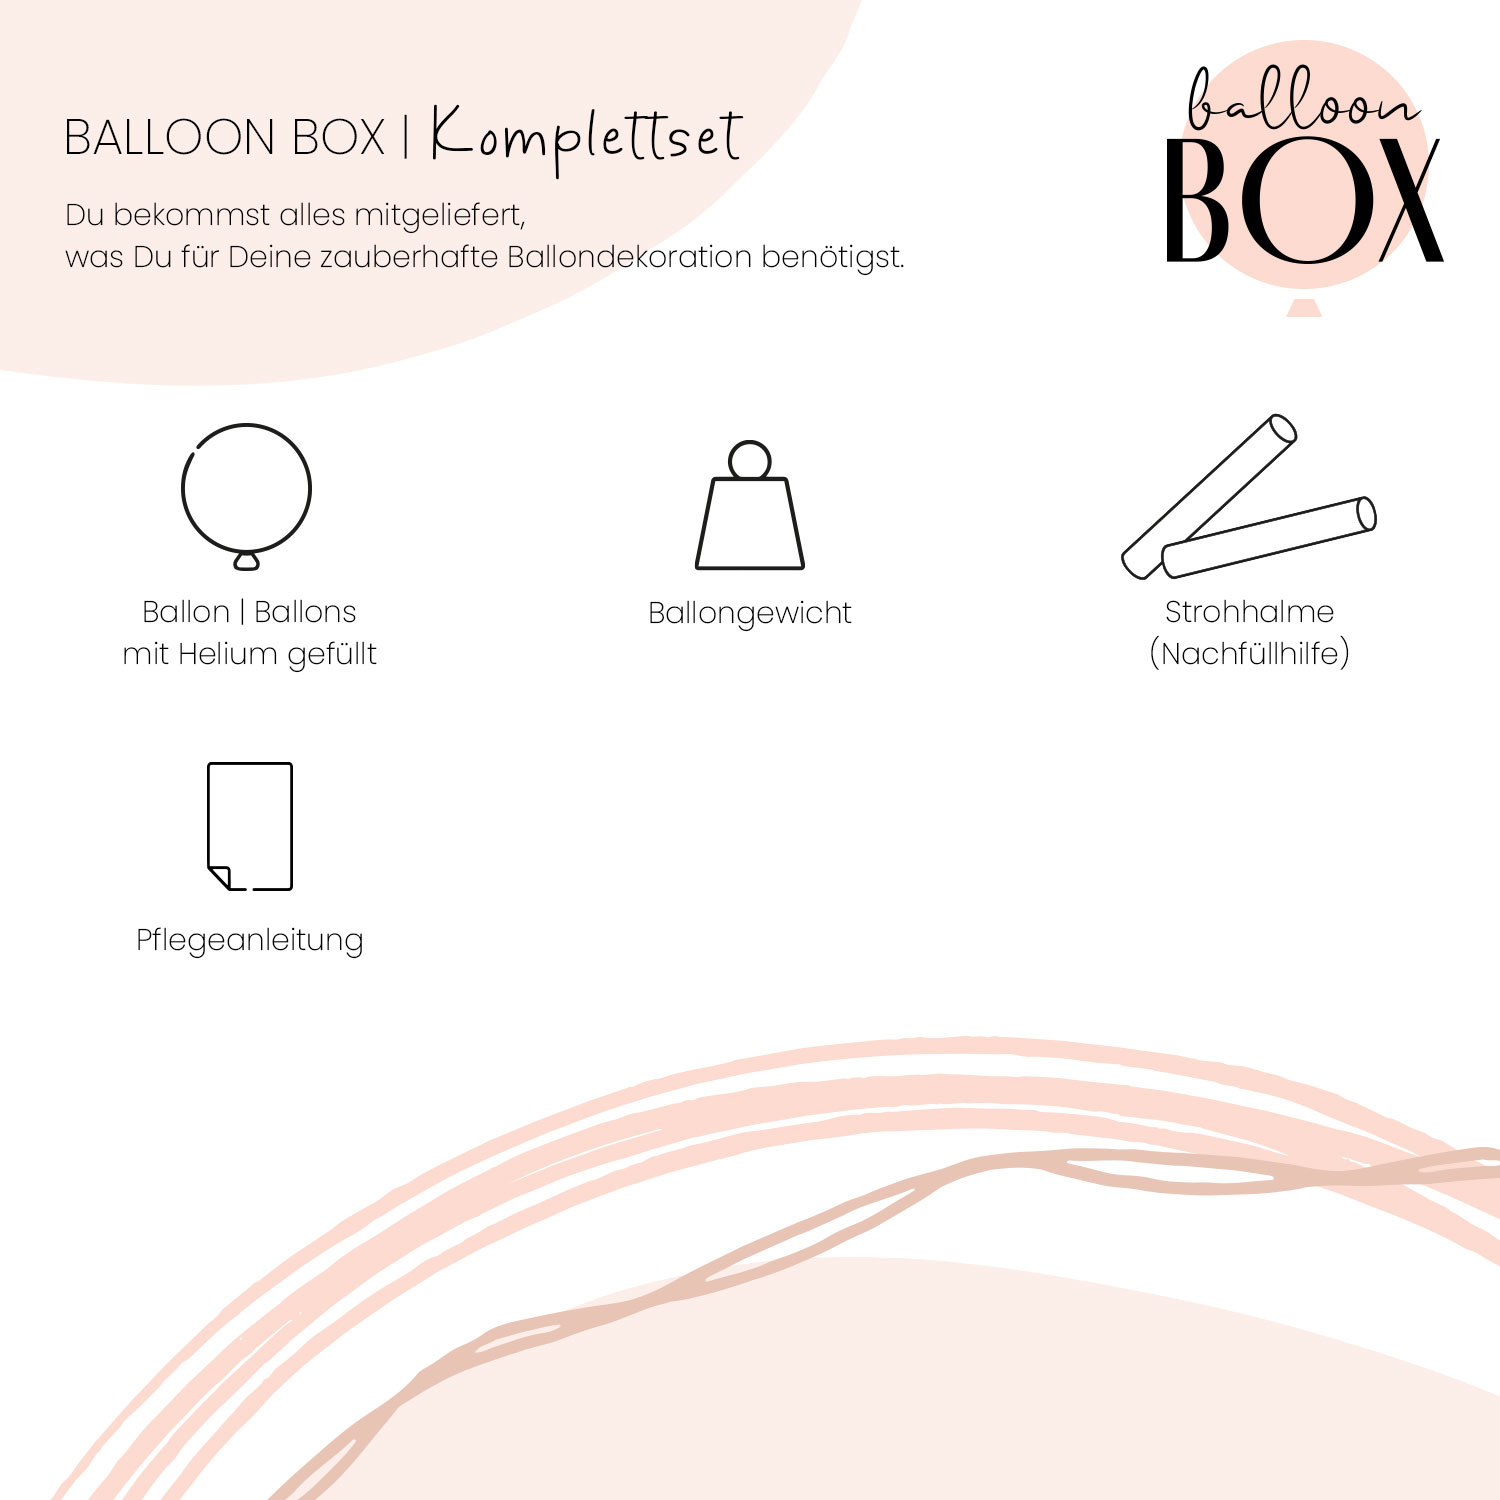 Heliumballon in a Box - Gute Fahrt